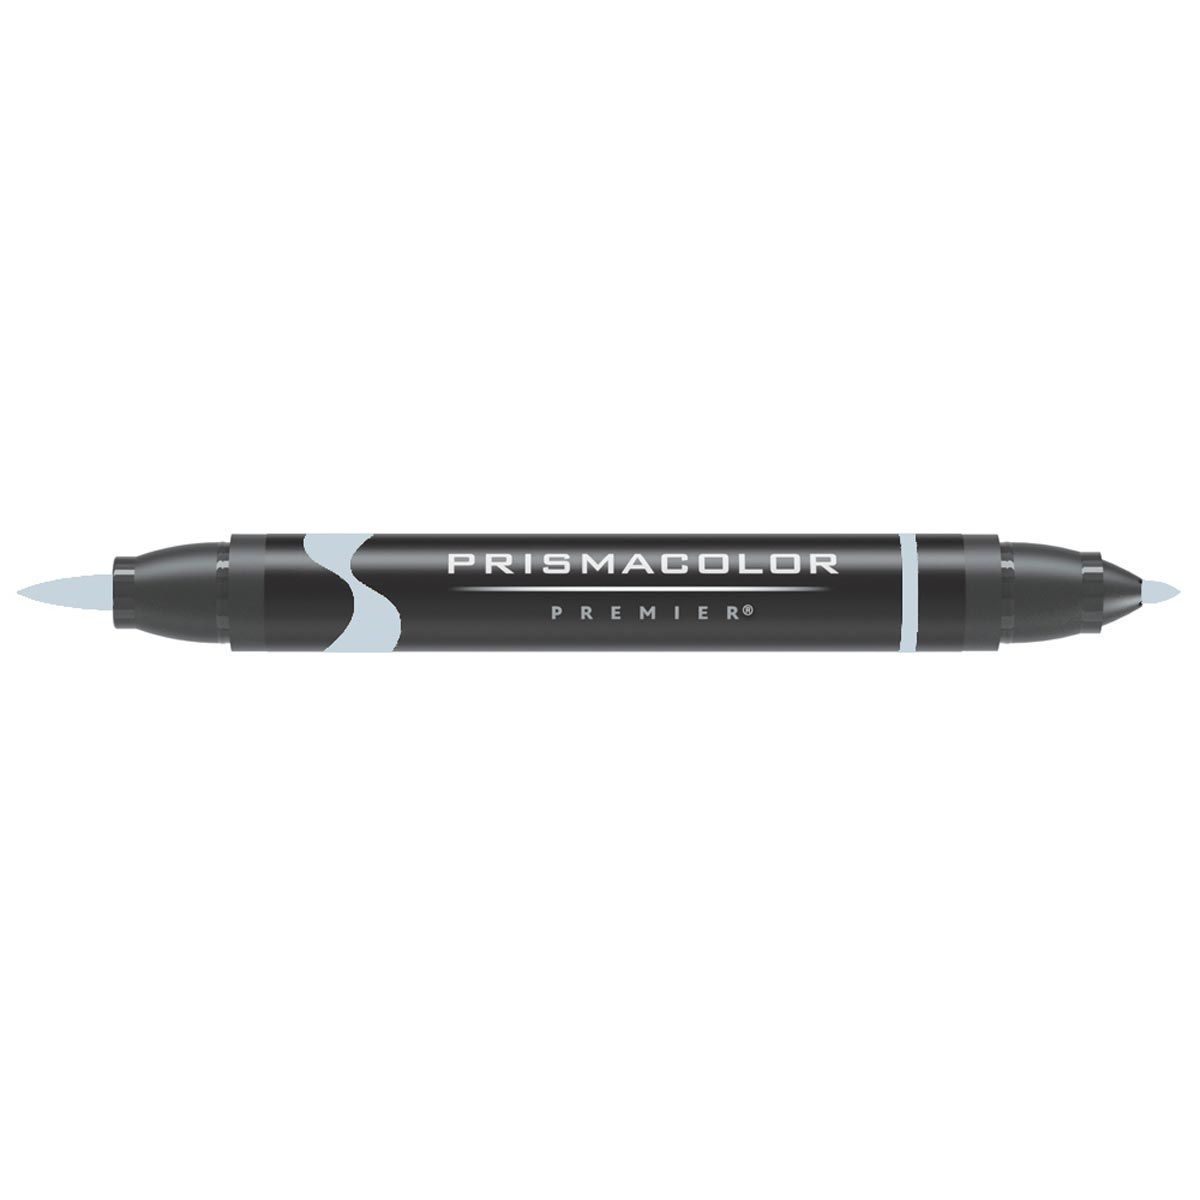 Prismacolor Brush Tip Marker - Cool Grey 30%